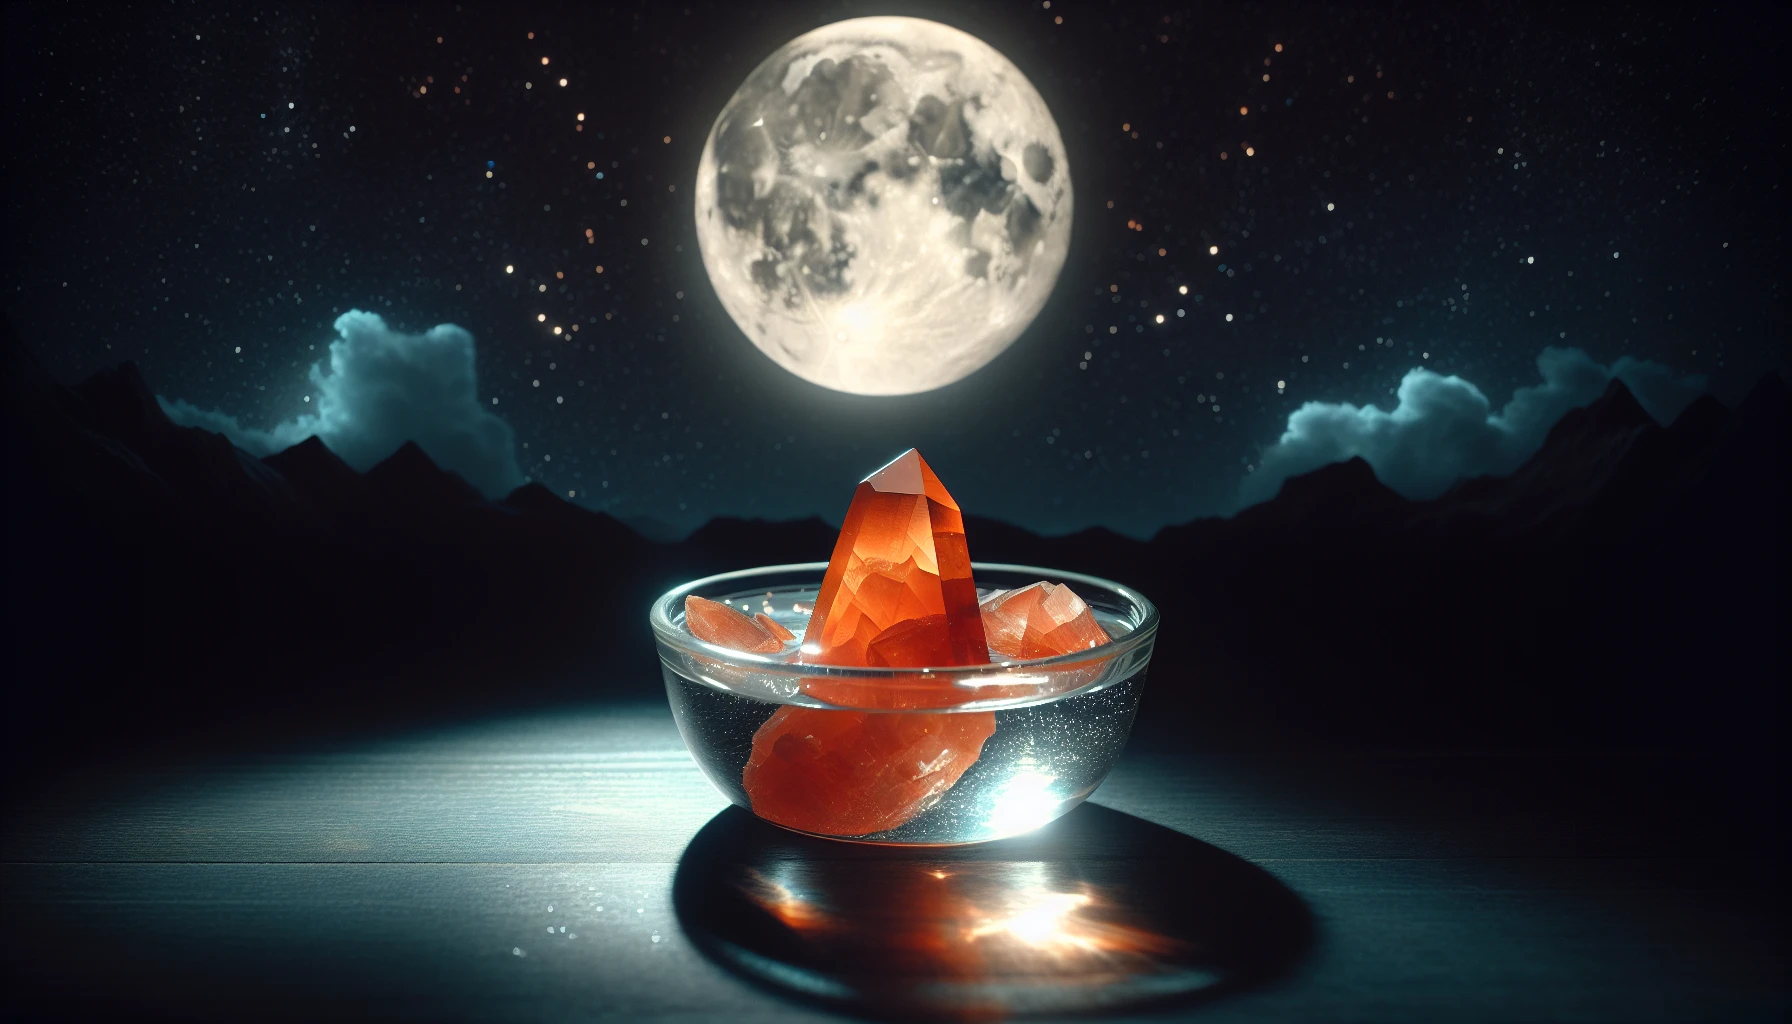 Carnelian crystal under moonlight